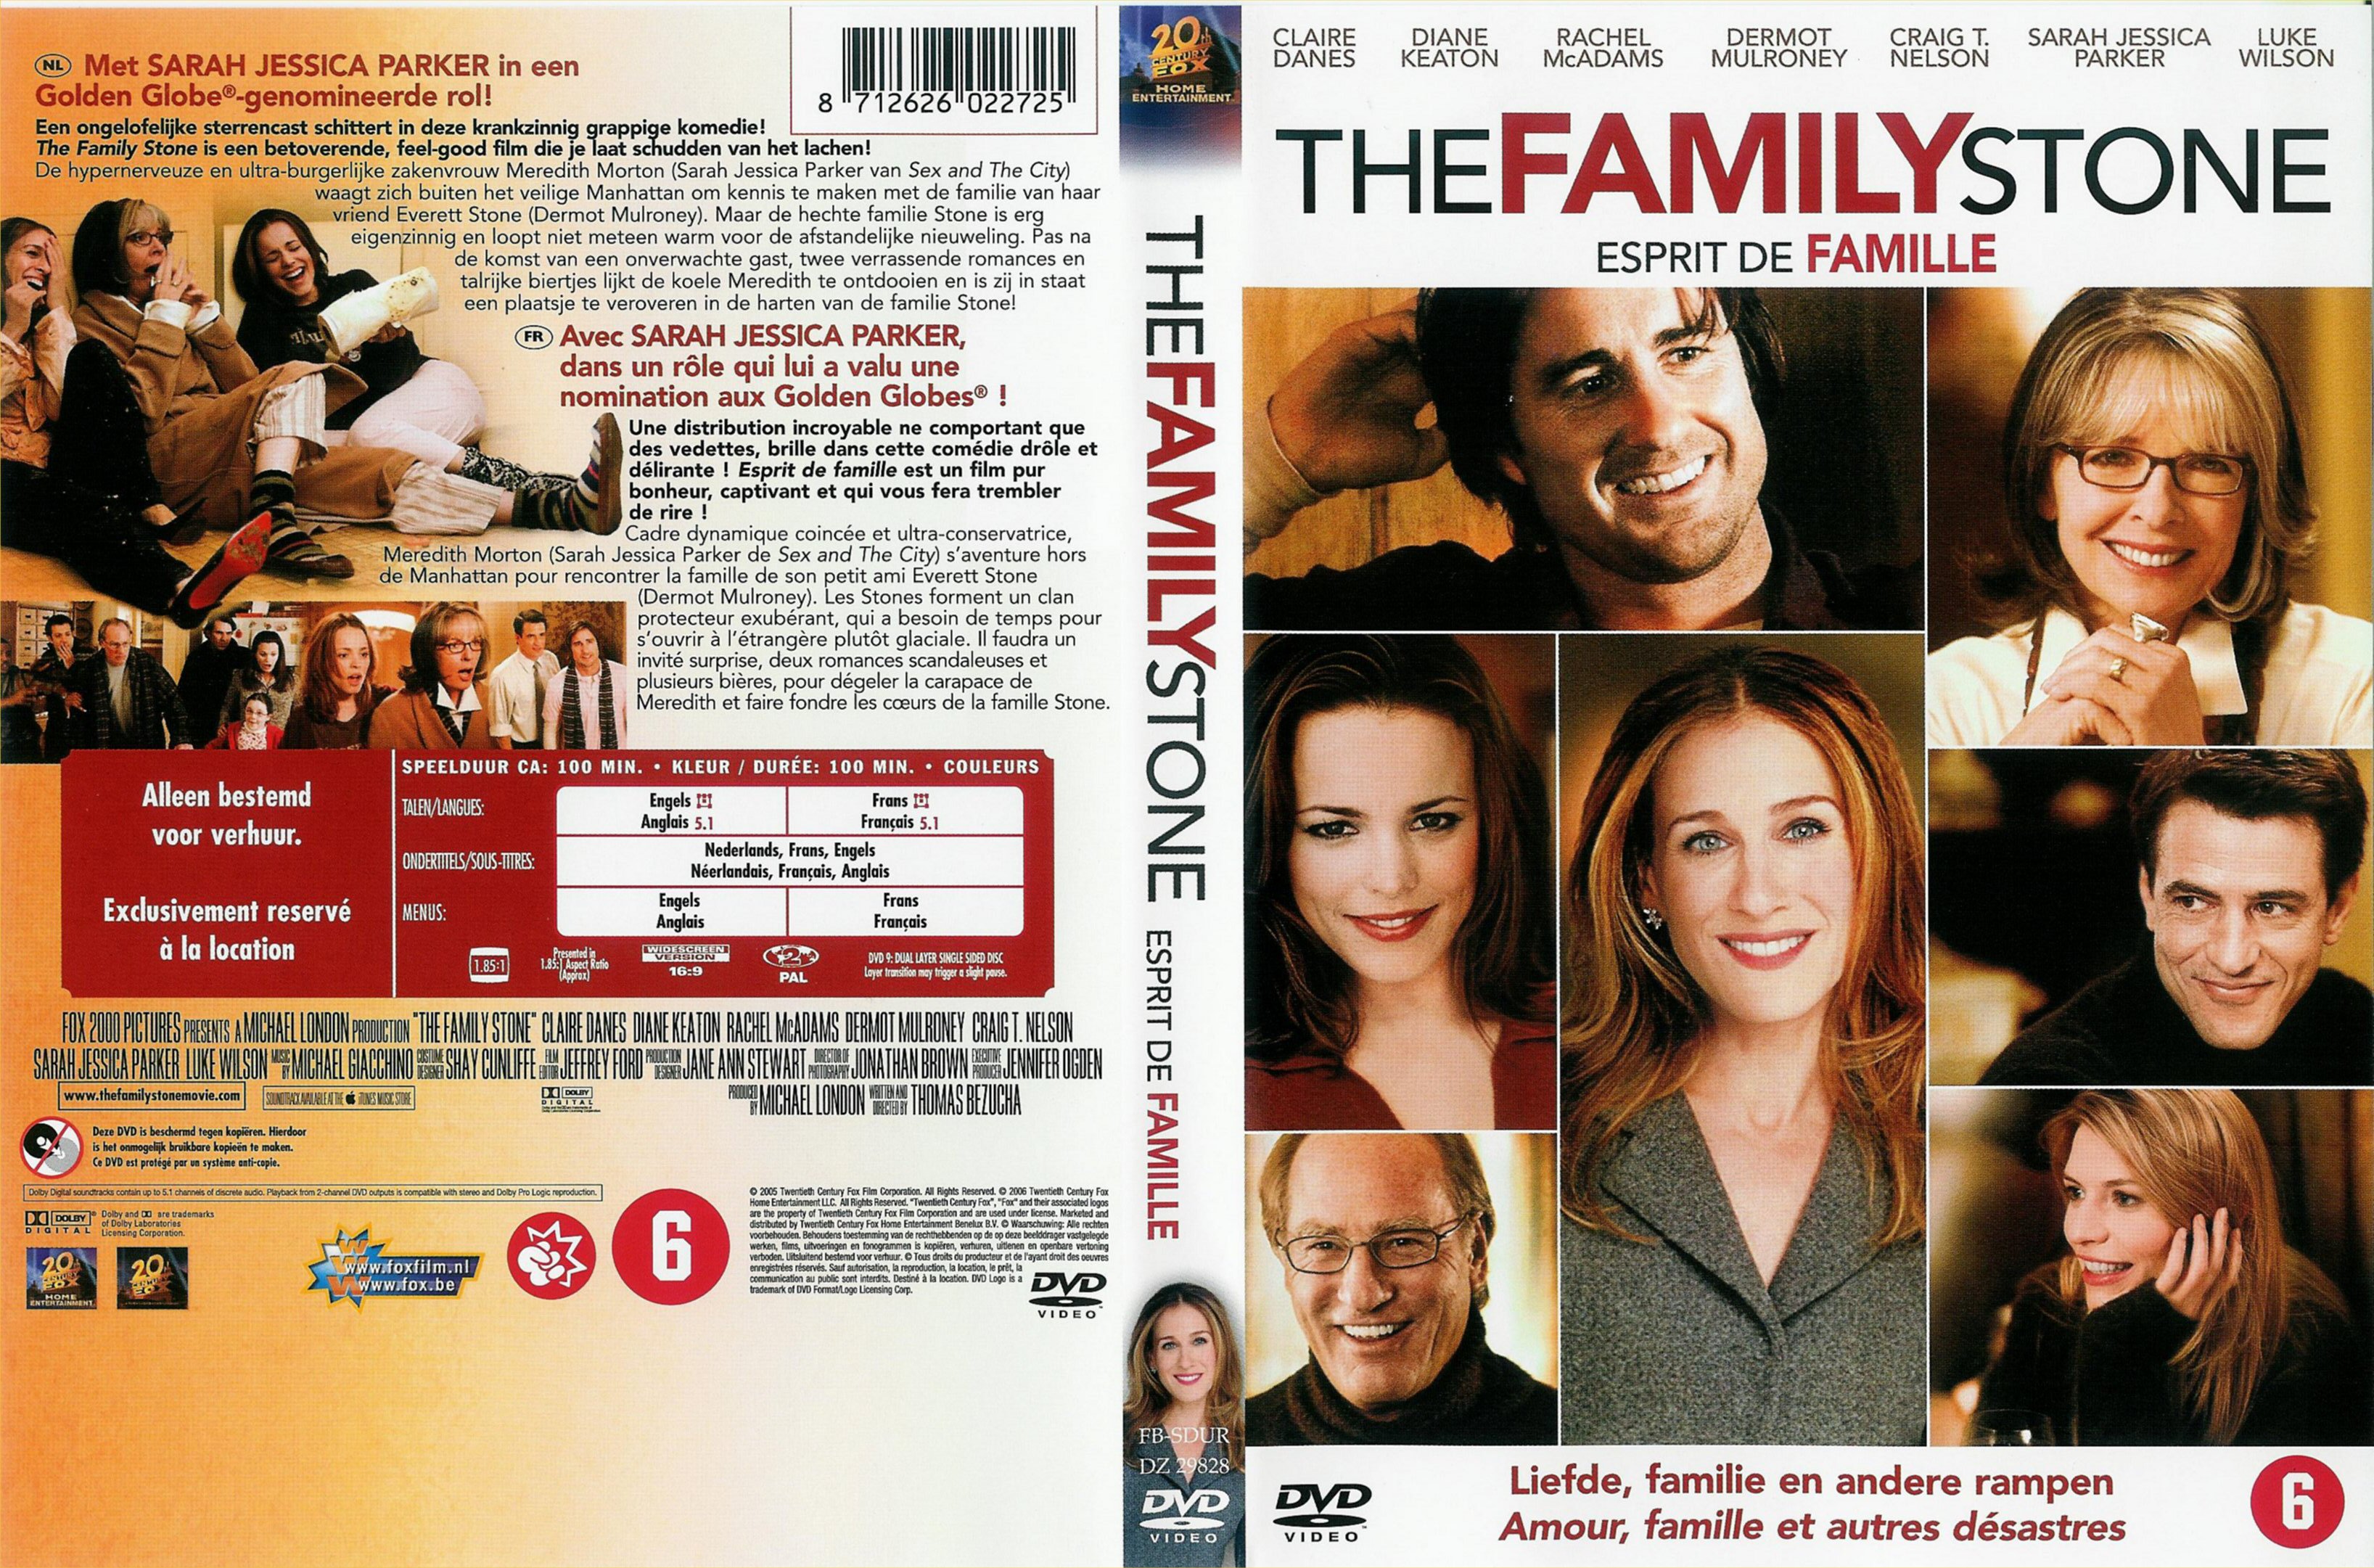 Jaquette DVD The family stone - Esprit de famille